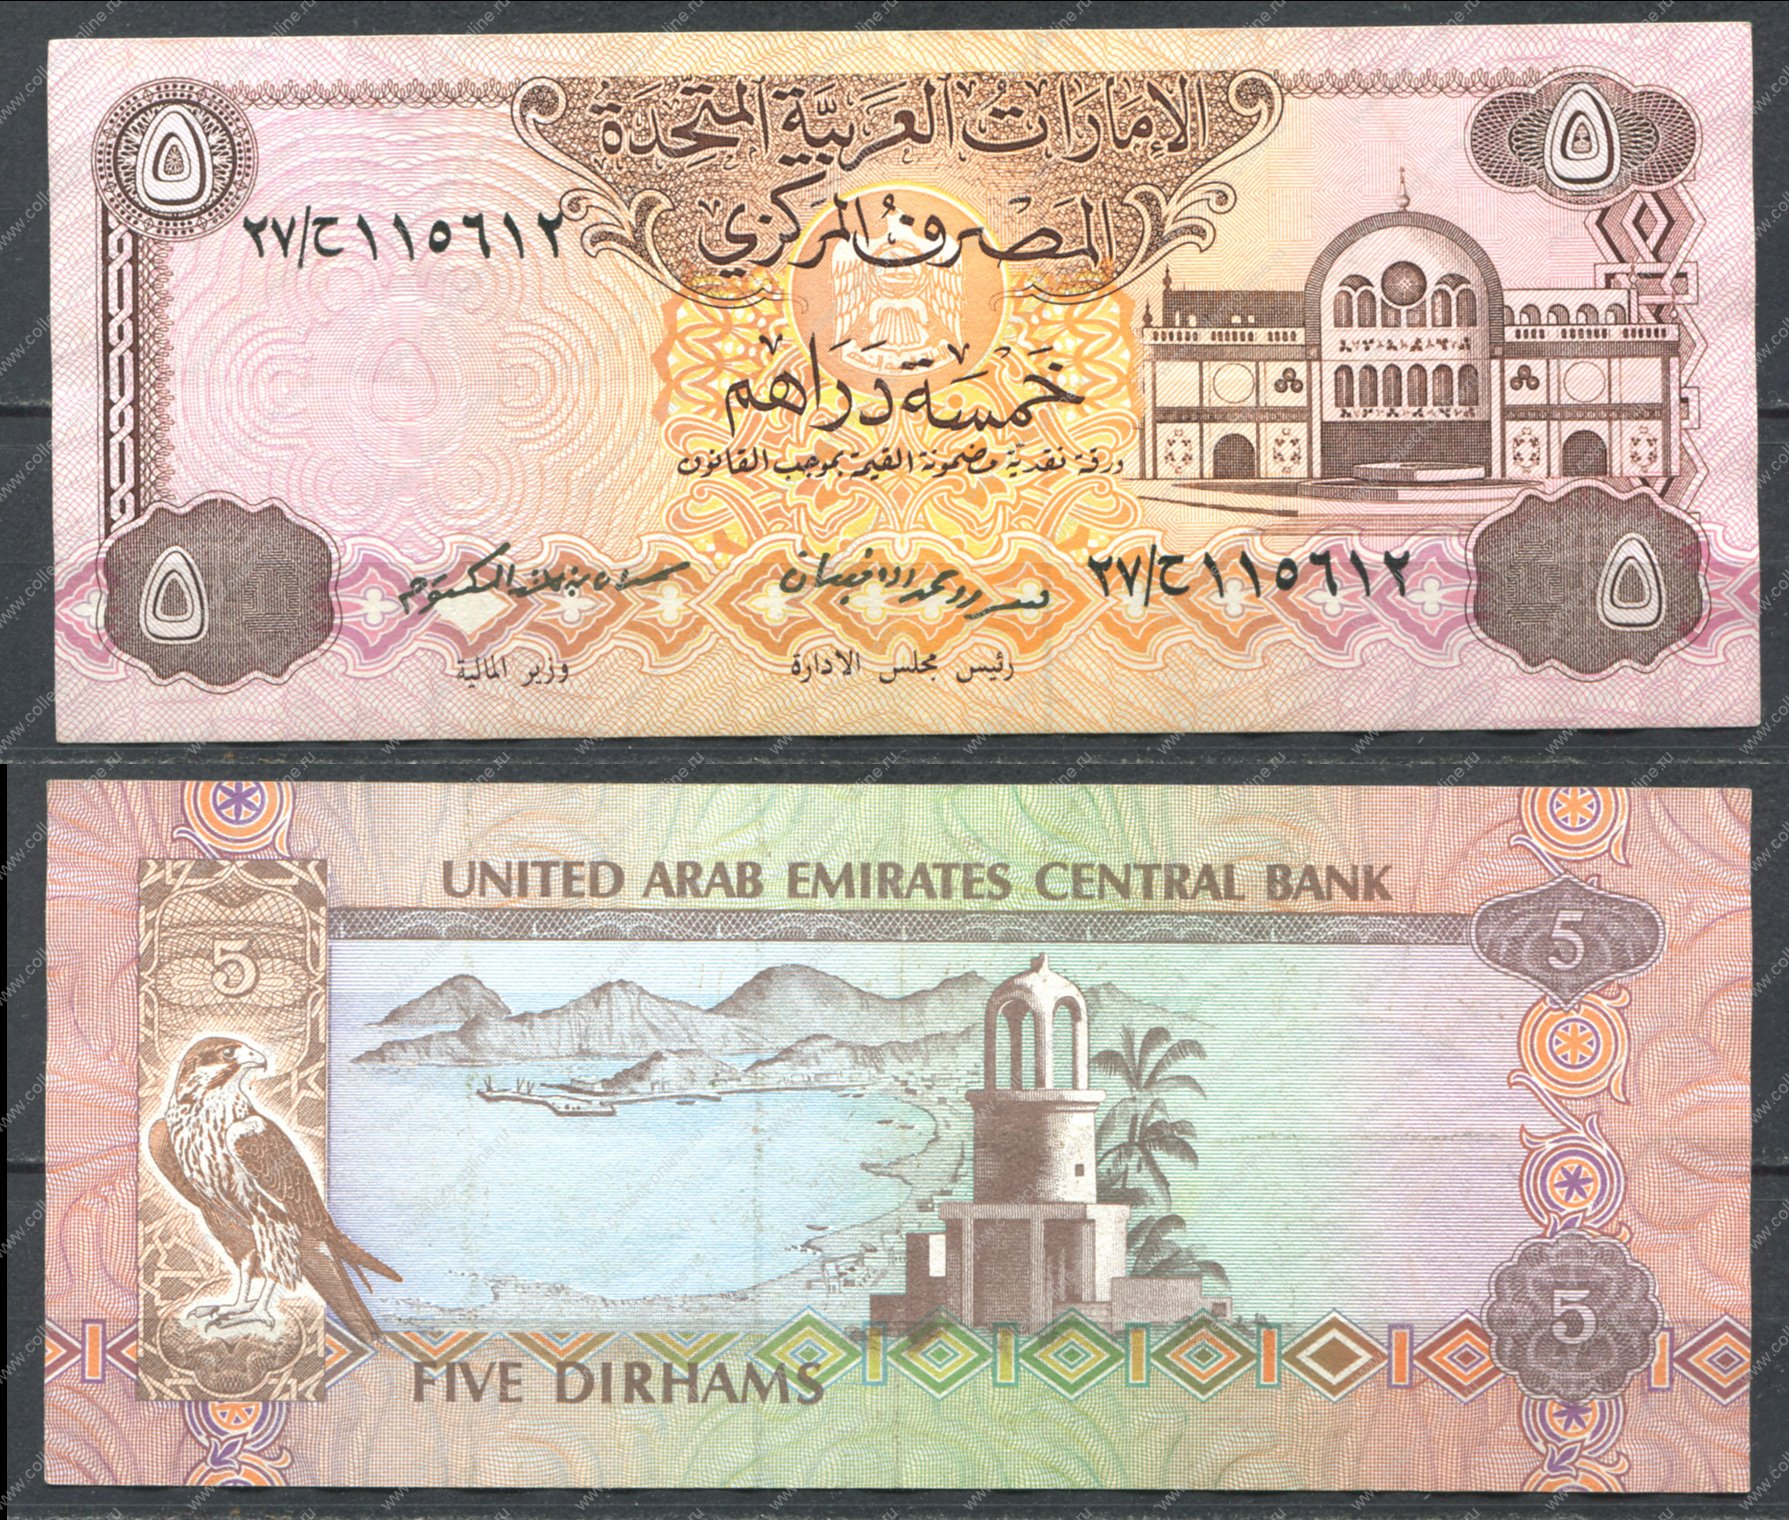 Курс обмена доллара на дирхамы. Дирхамы ОАЭ. Банкноты арабских стран. Дирхам ОАЭ банкноты. Арабская купюра 1.